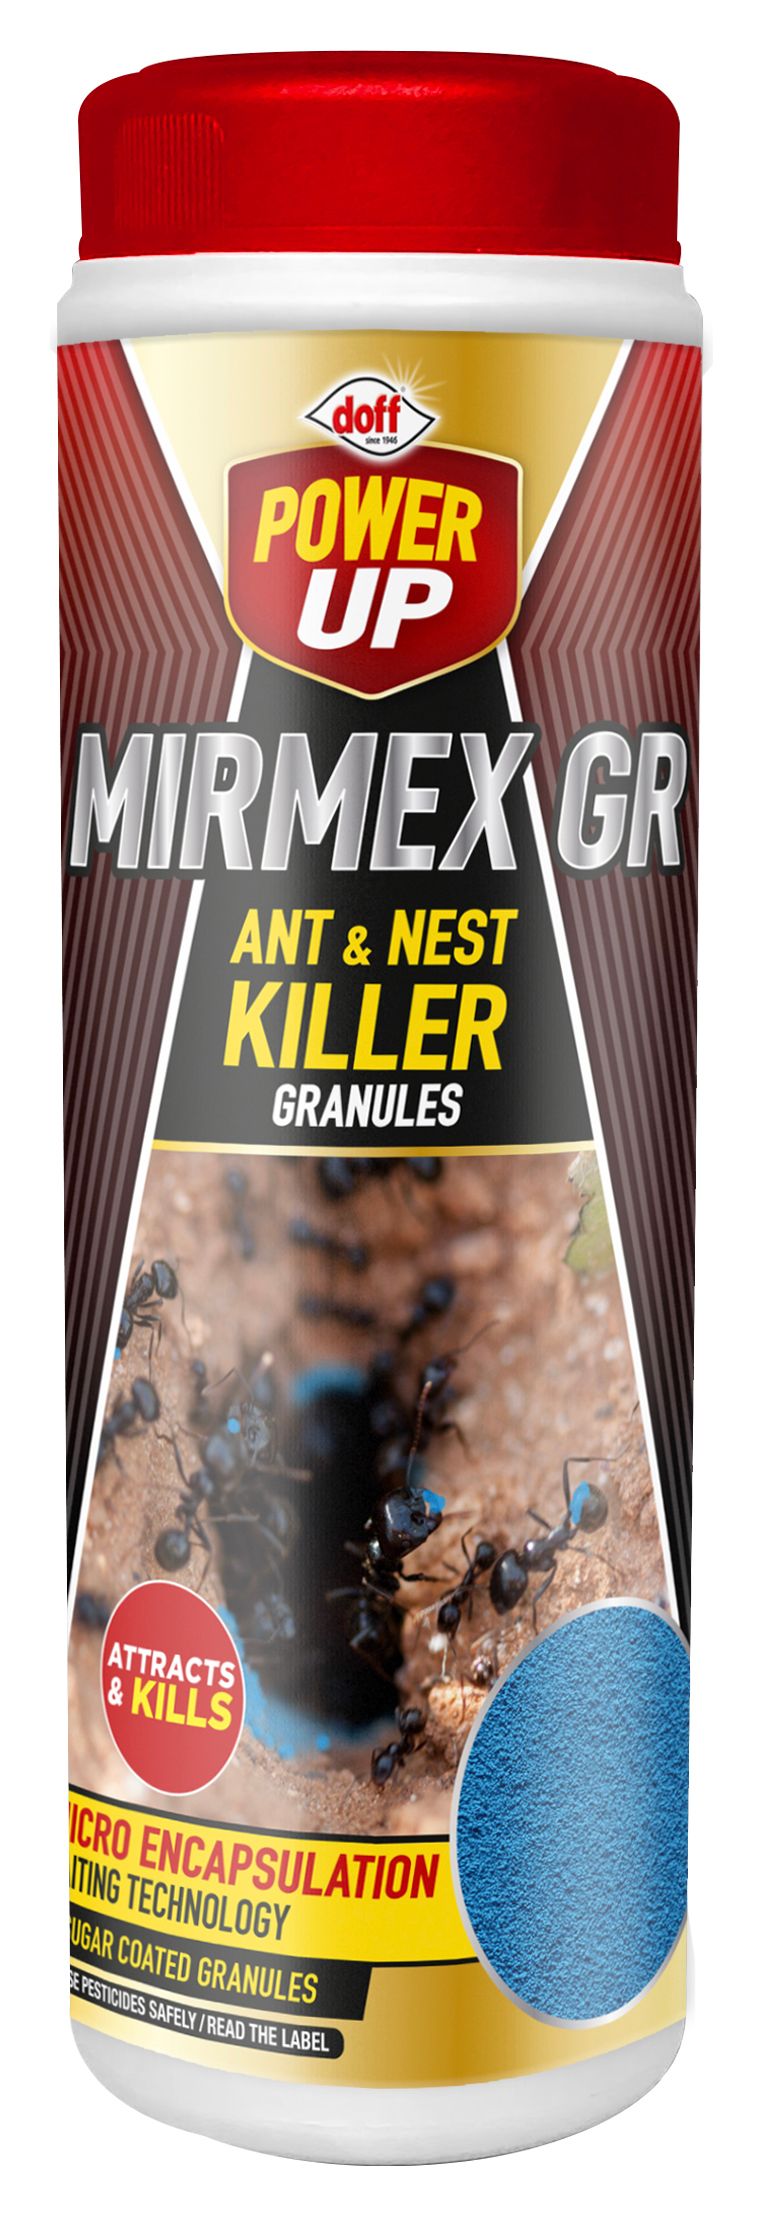 Image of Doff Power Up 2-in-1 Ant & Nest Killer Granules - 350g